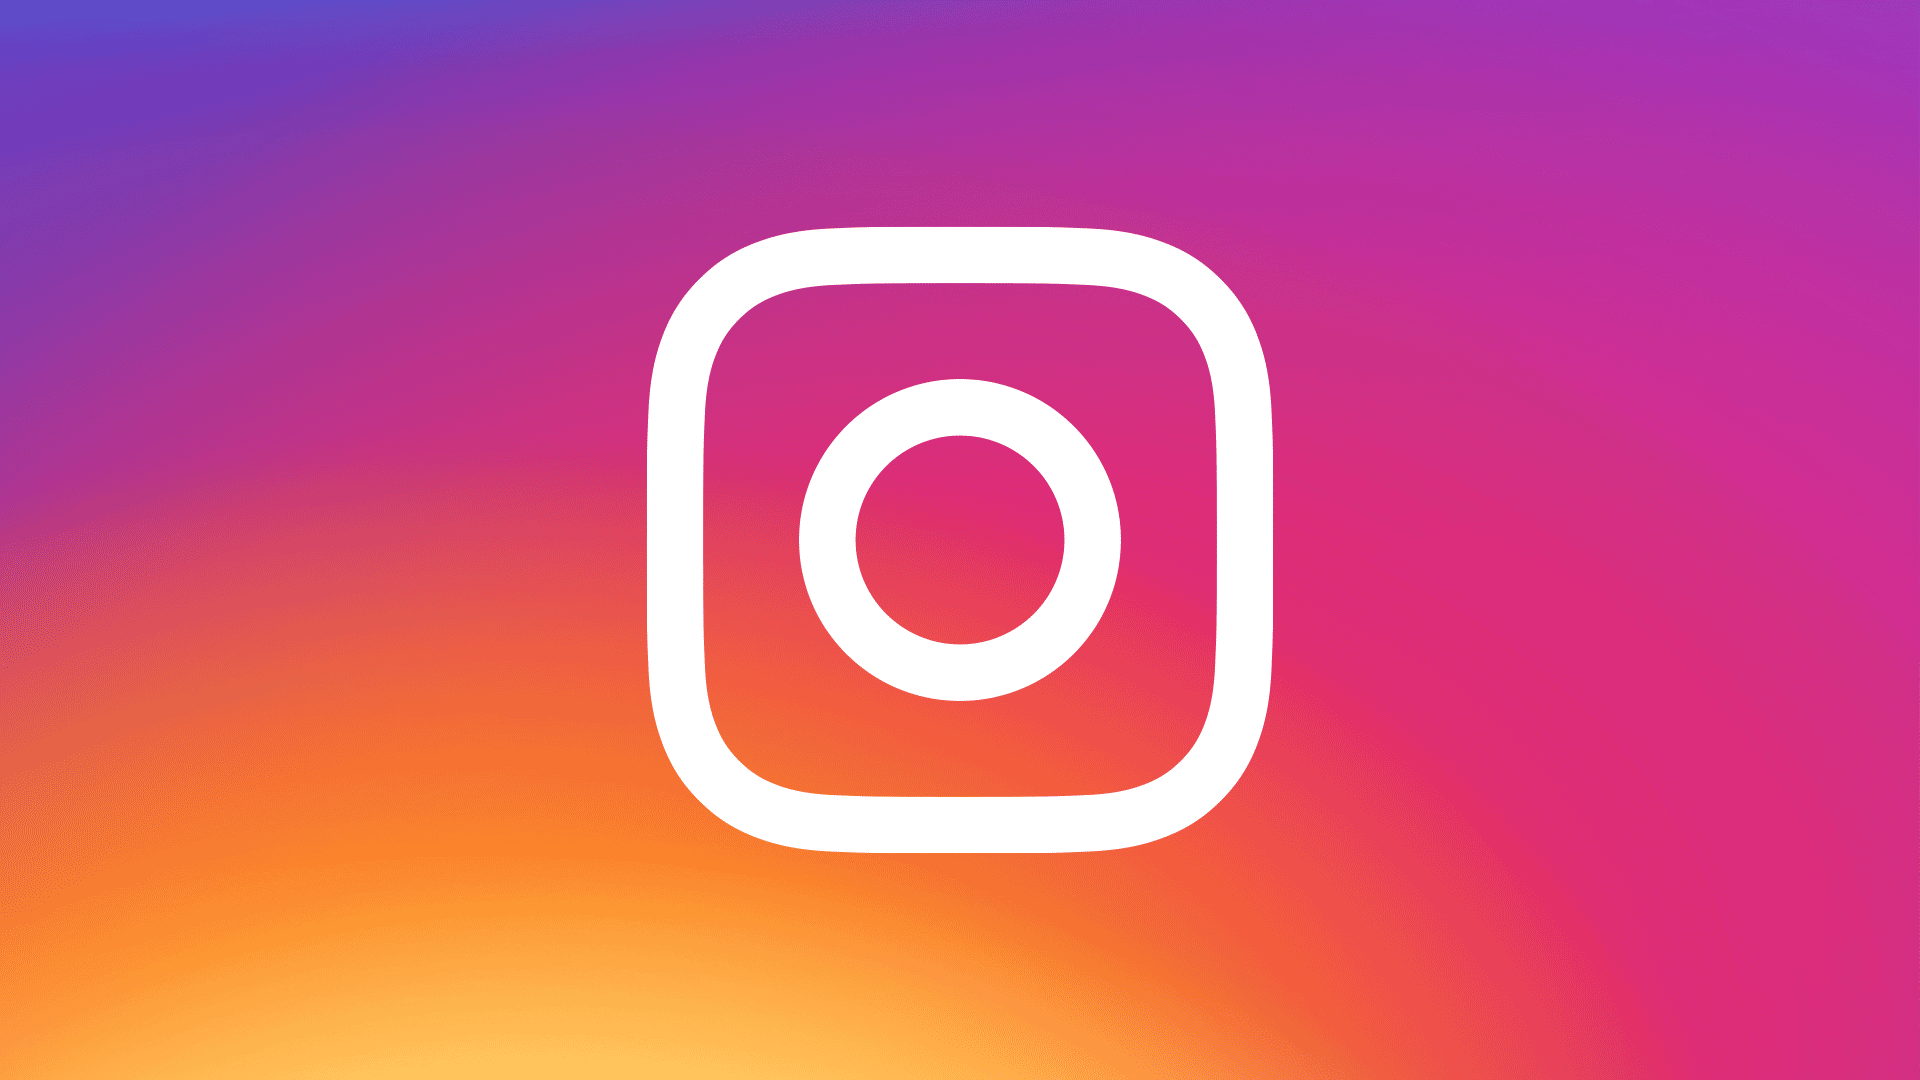 Instagram là nơi tuyệt vời để kiếm tiền, và công cụ mới của Zuckerberg sẽ giúp cho các creator có thể tạo ra nhiều cơ hội để kiếm thu nhập từ hoạt động kinh doanh trên nền tảng này. Hãy xem hình ảnh để biết thêm chi tiết về các công cụ này!